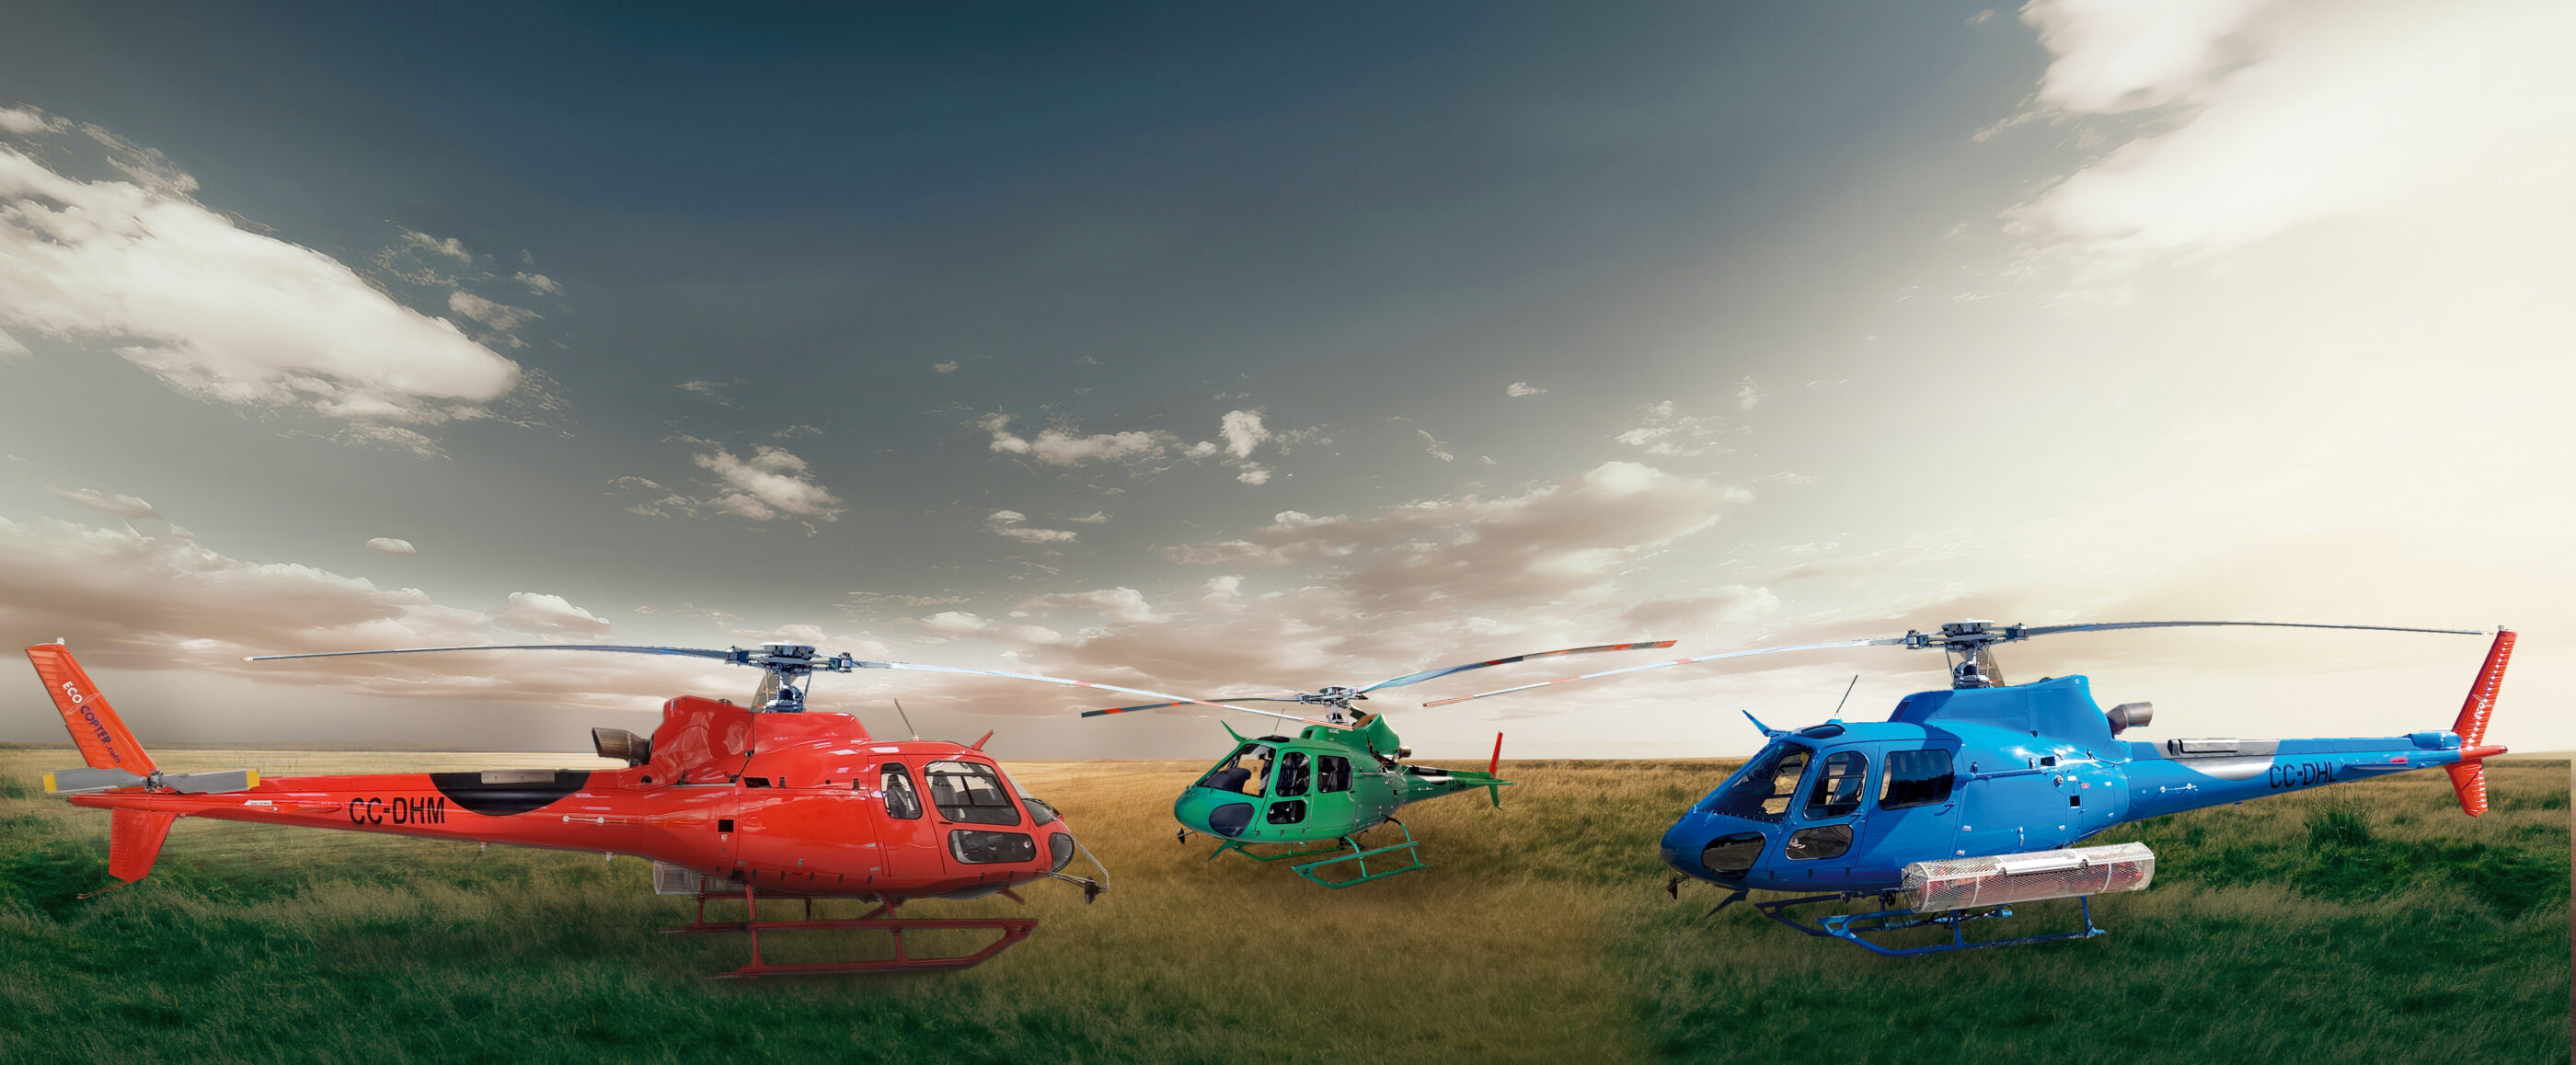 Helicópteros adquiridos por Ecocopter han aterrizado en Chile para reforzar su flota en Sudamérica